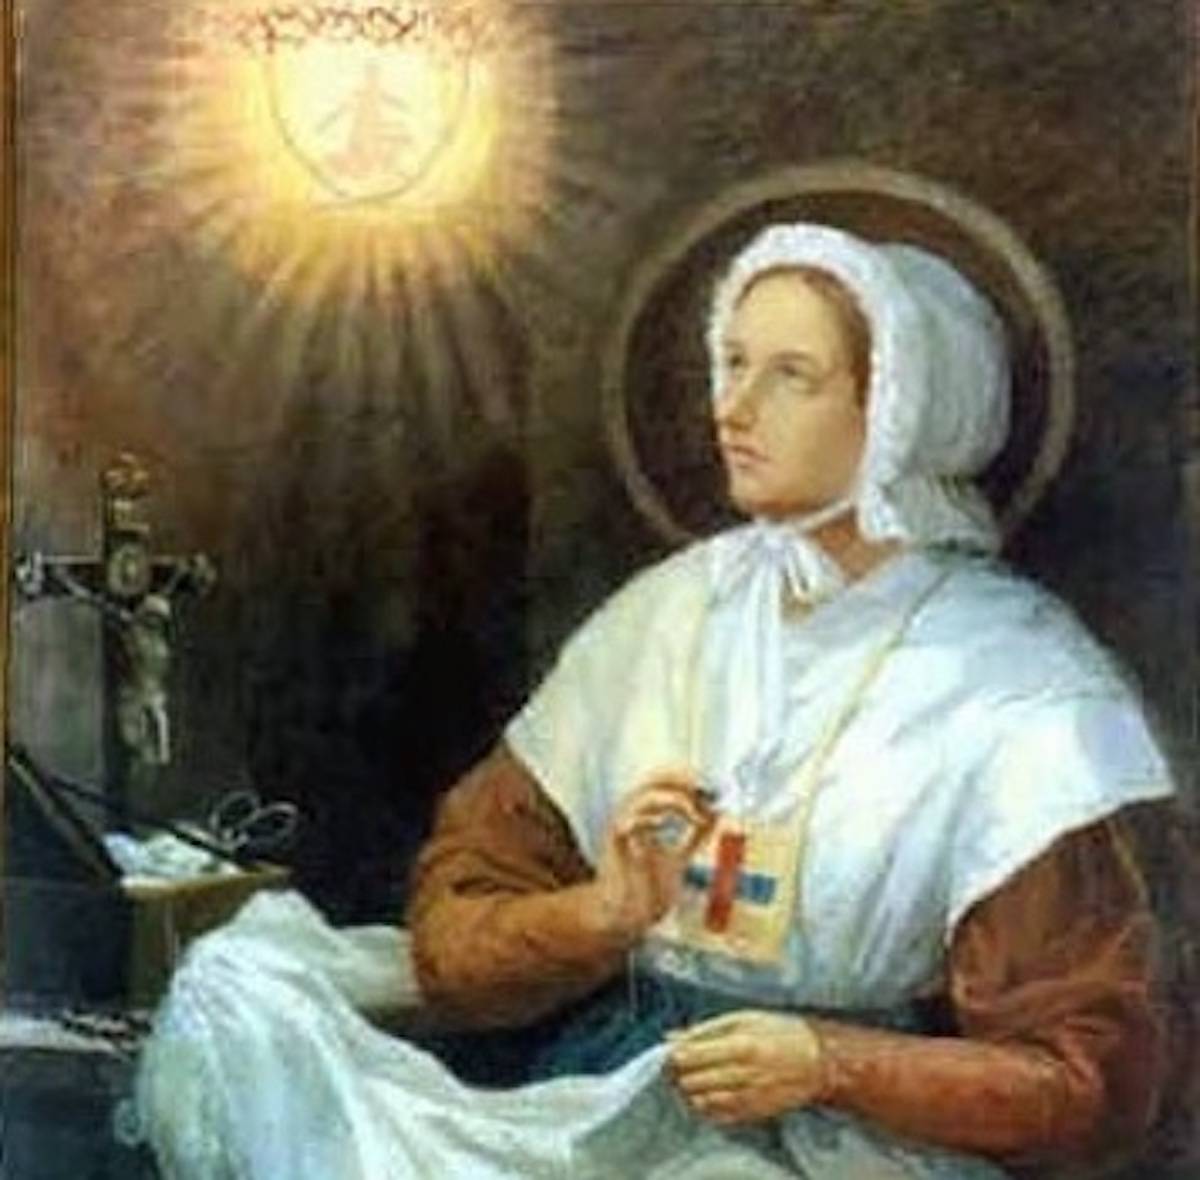 Beata Ana María Taigi